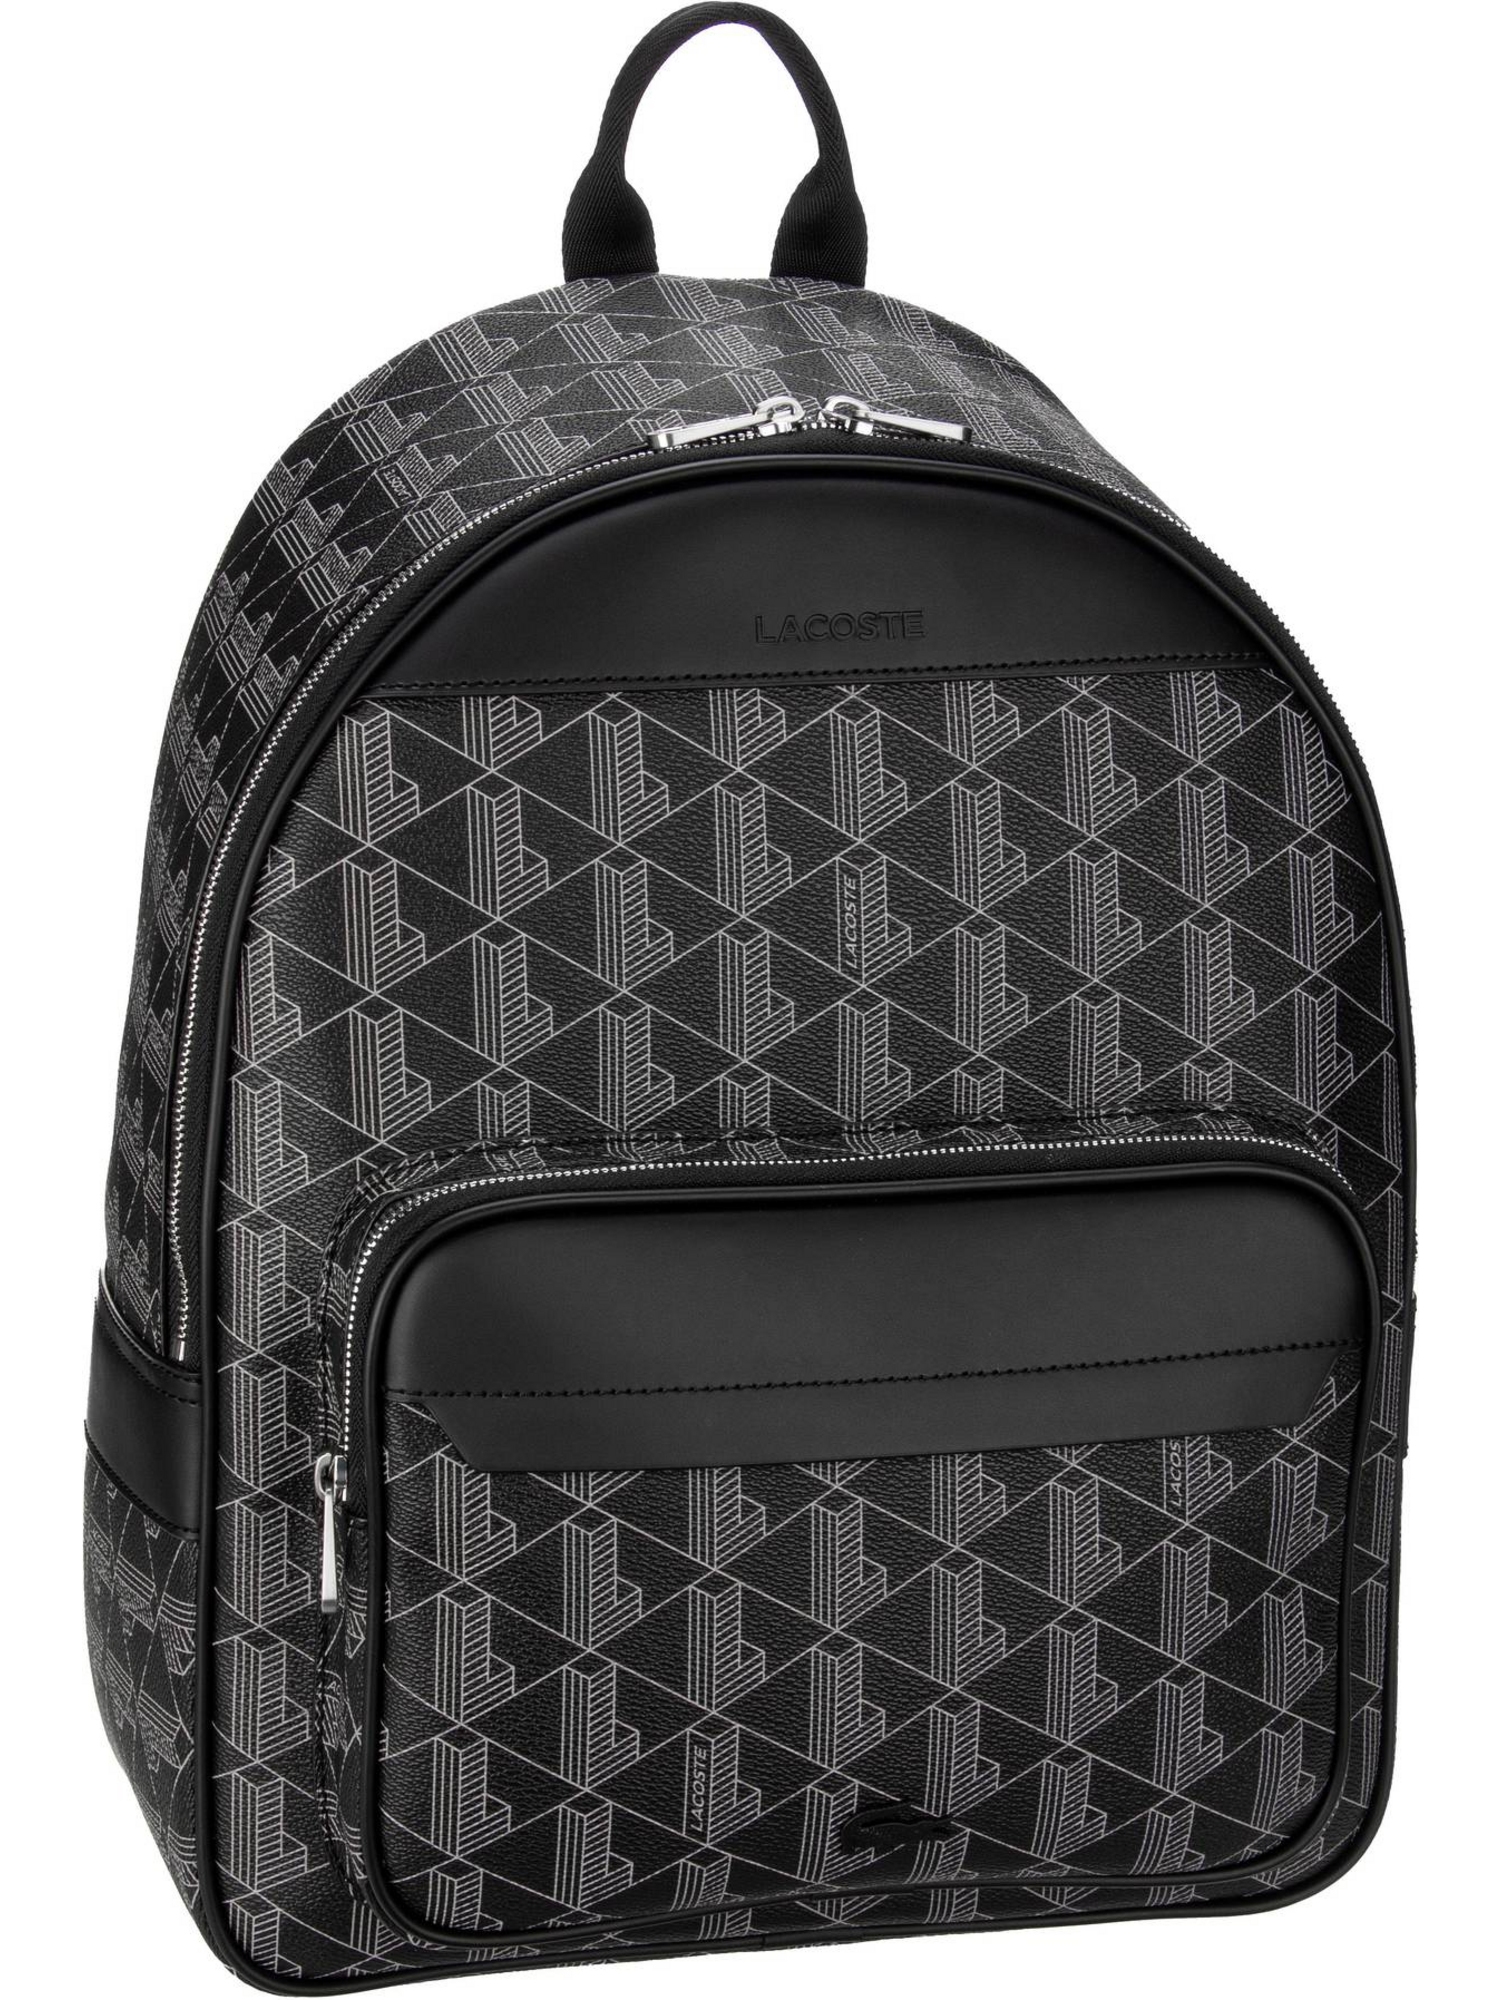 Рюкзак Lacoste / Backpack The Blend 3649, цвет Monogram Noir Gris сумка через плечо lacoste the blend 21 5 cm цвет monogram noir gris